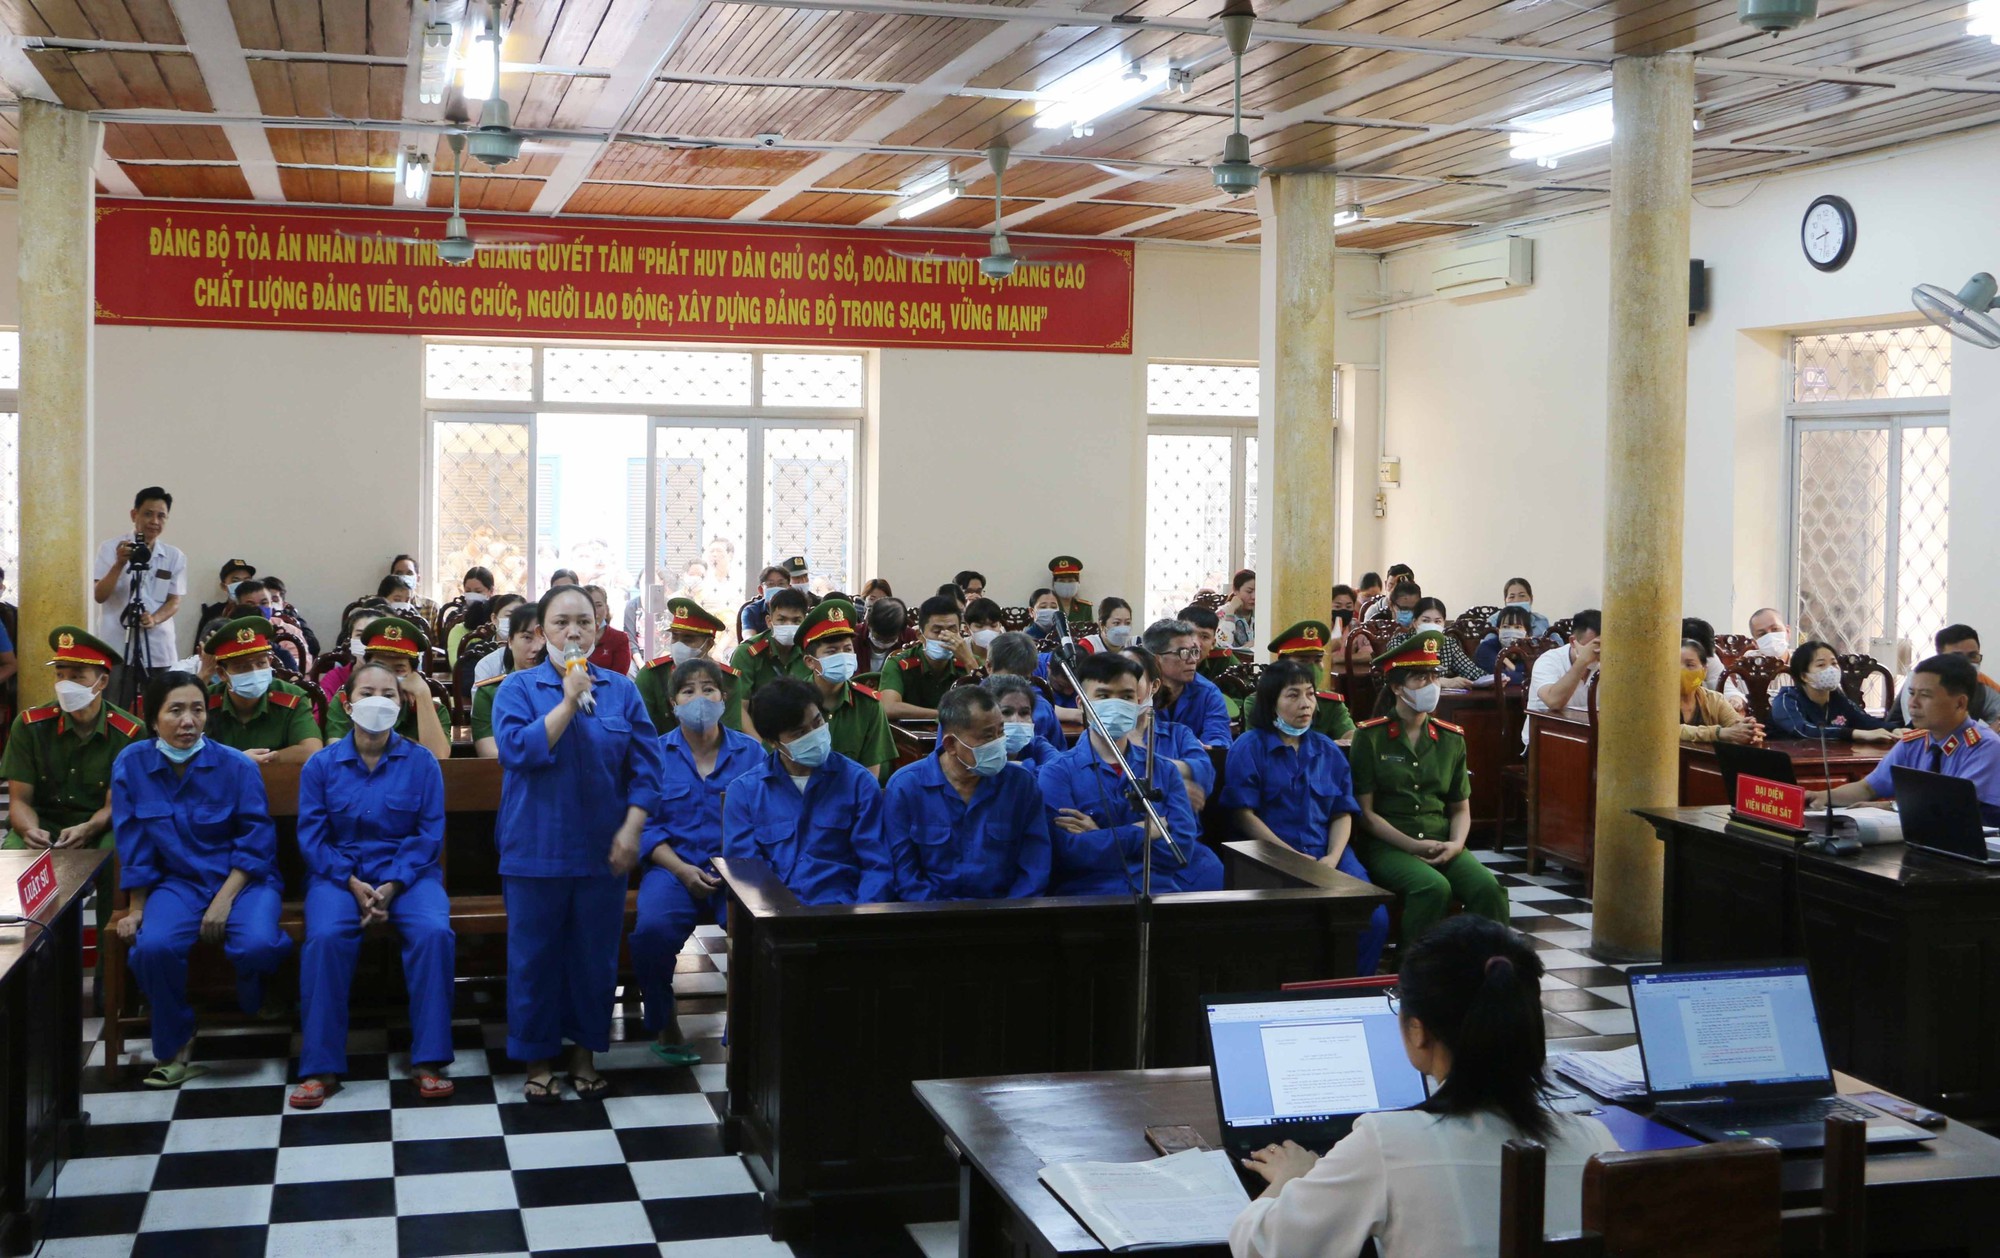 62 bị cáo trong đường dây đánh bạc gần 1.000 tỷ ở An Giang bị tuyên phạt 208 năm 6 tháng tù - Ảnh 2.